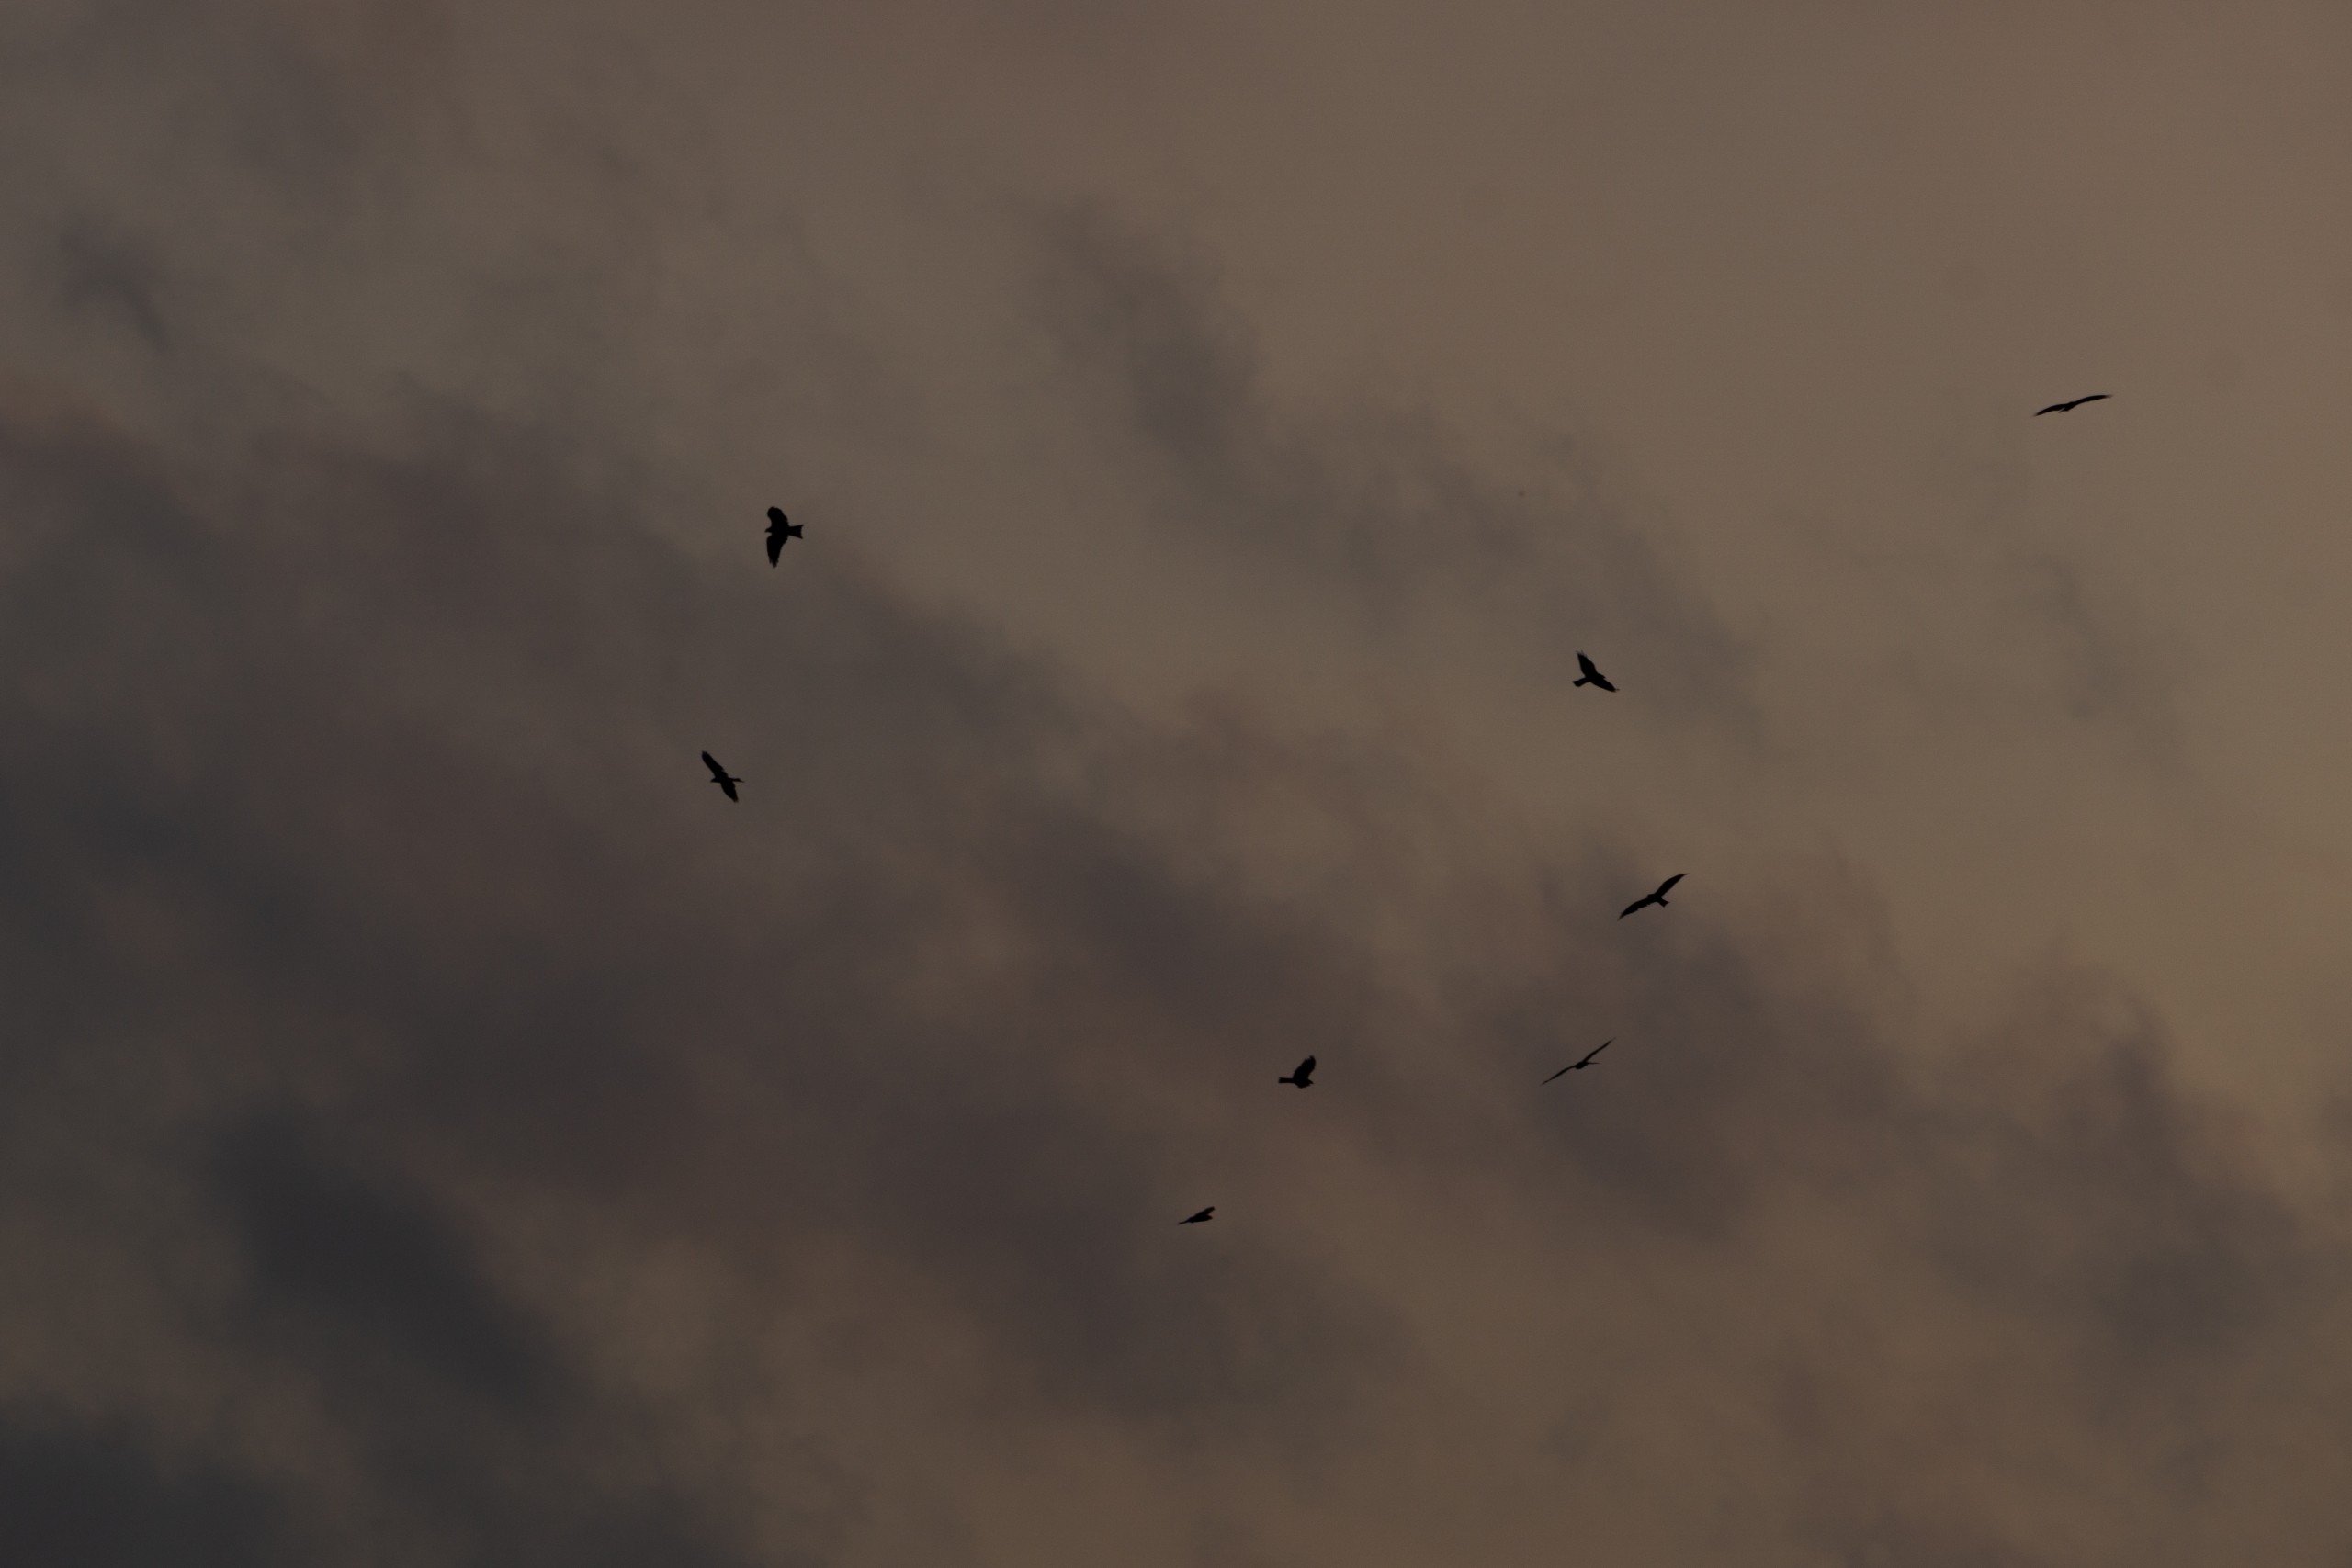 A flock of birds on a cloudy sky